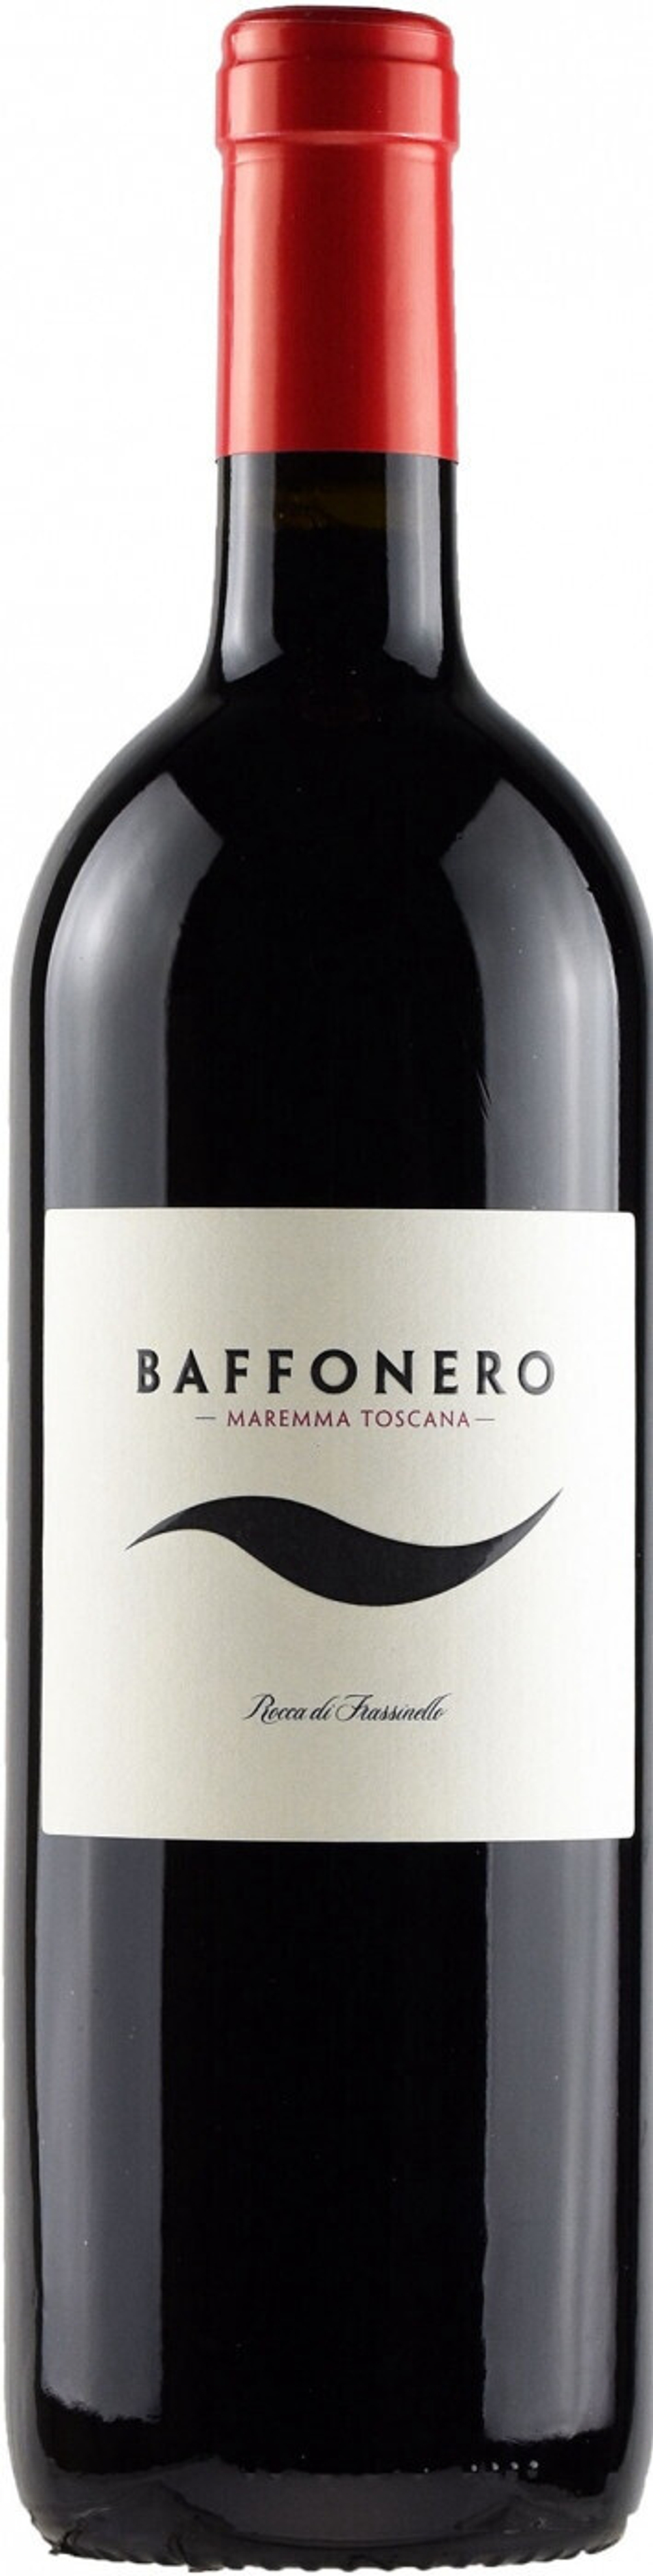 Вино Rocca di Frassinello Baffonero, 0,75 л.